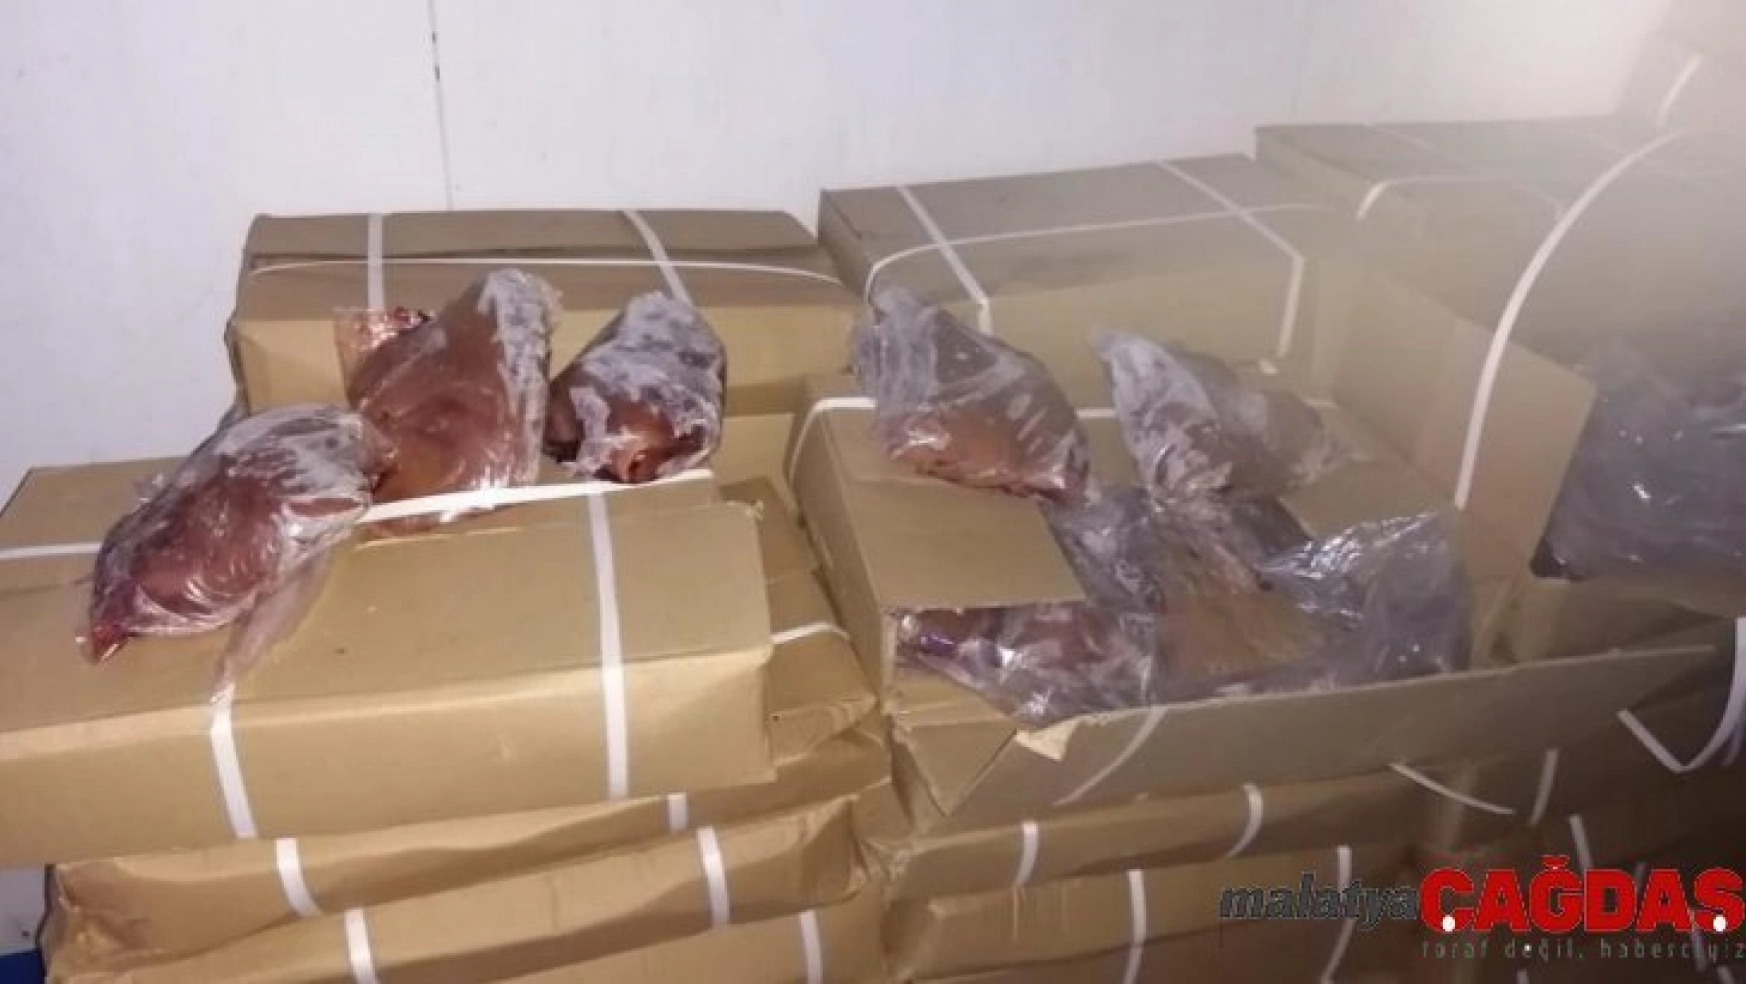 Mersin'e Çin'den getirilen kaçak 23 ton kuzu ciğeri yakalandı